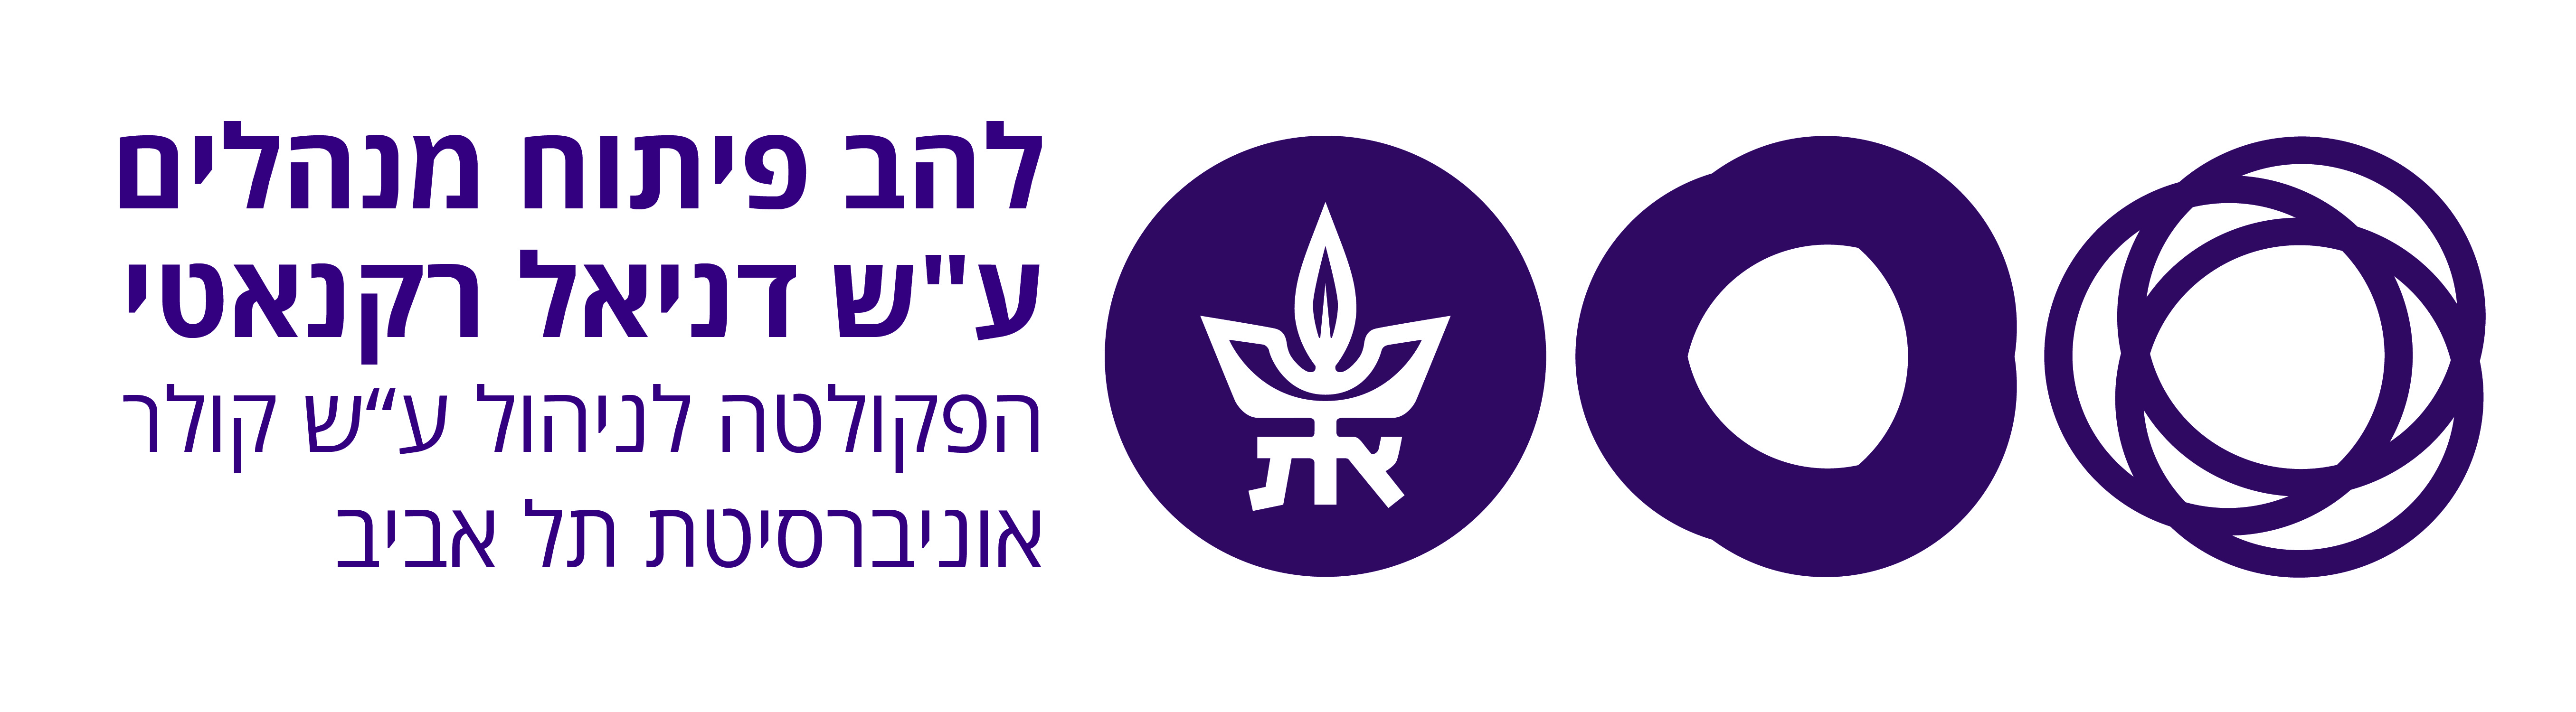 להב פיתוח מנהלים - אוניברסיטת תל אביב